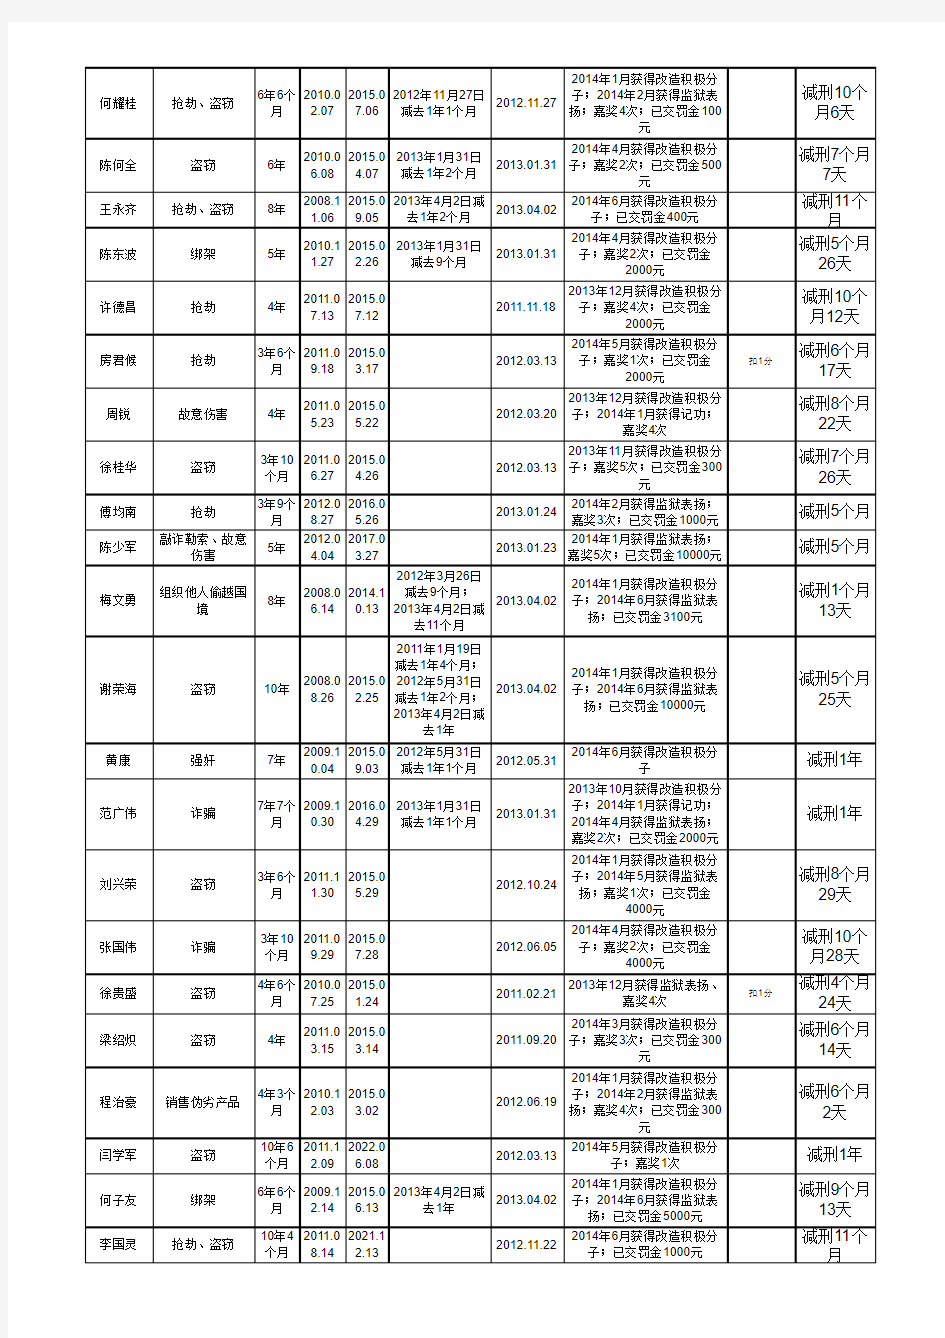 广东省高明监狱拟减刑假释案件基本情况xls-1